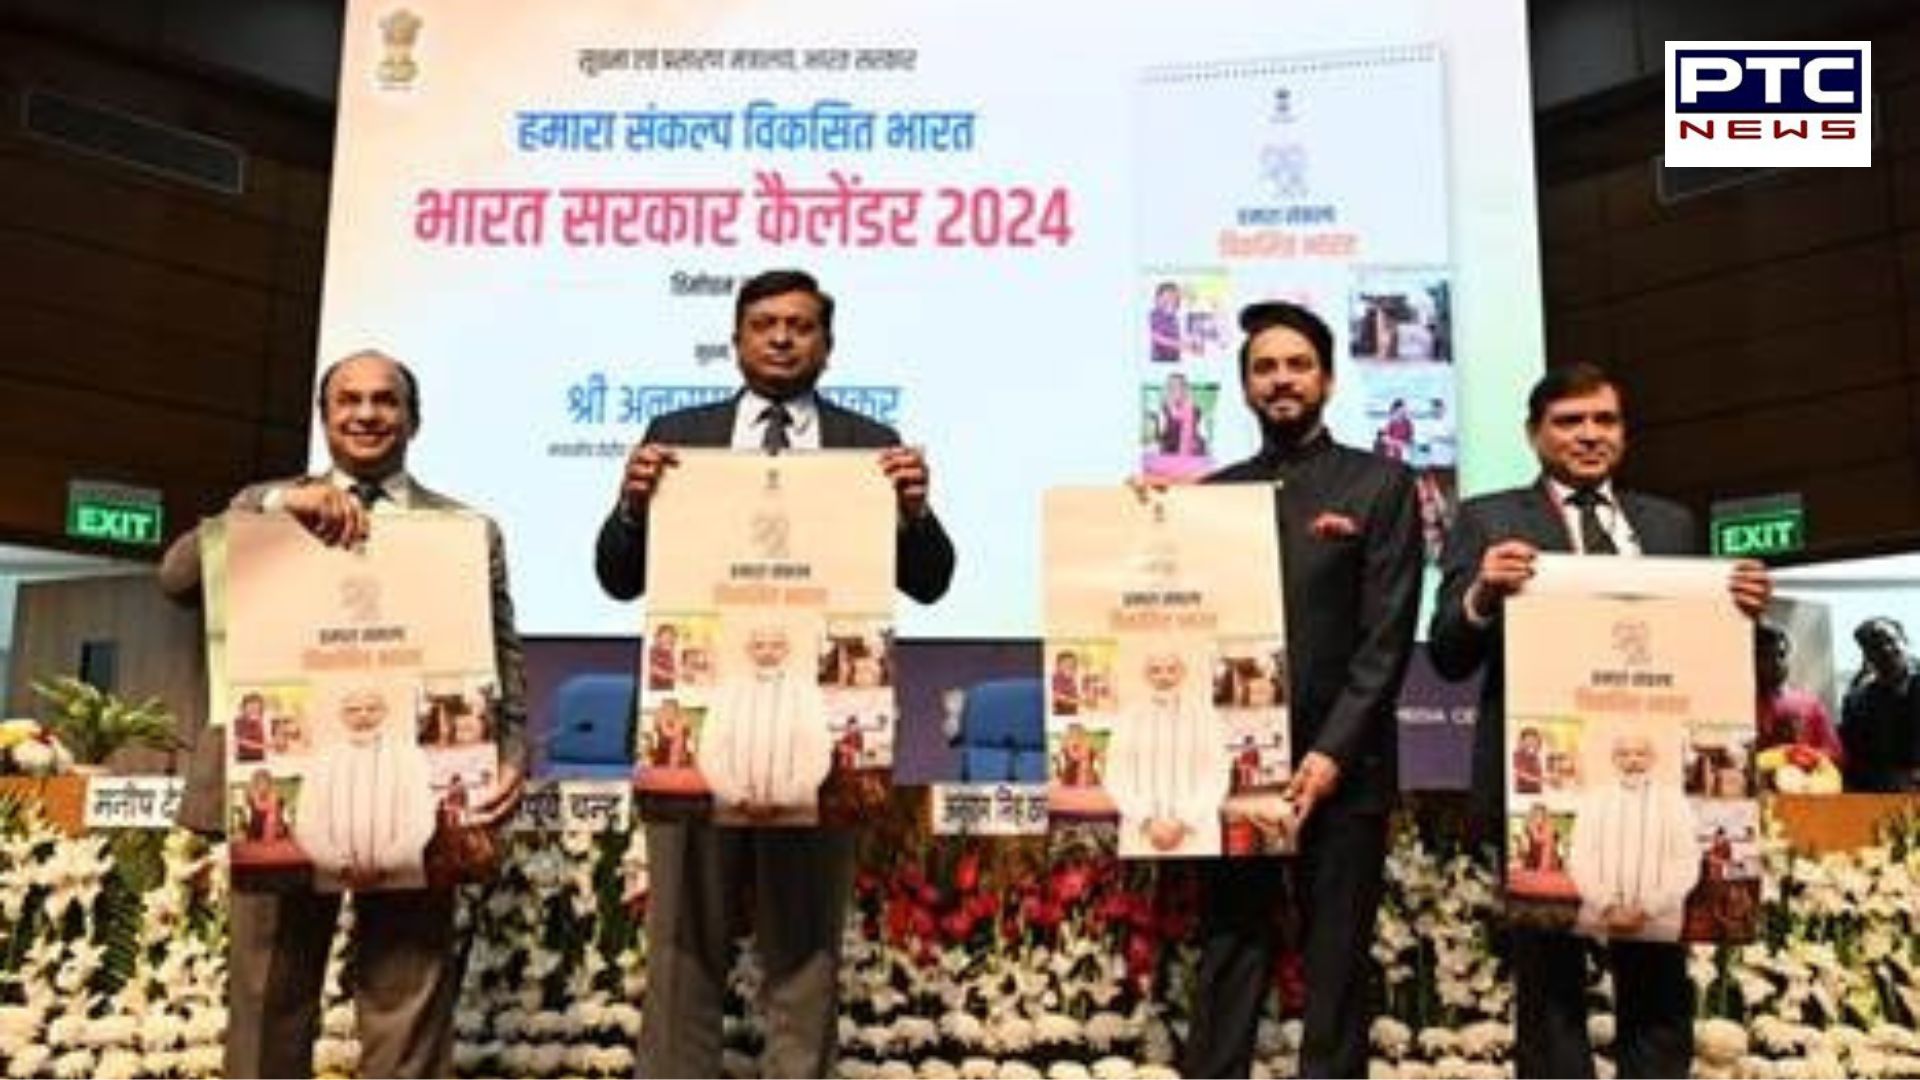 Govt's 2024 calendar showcases achievements with QR codes